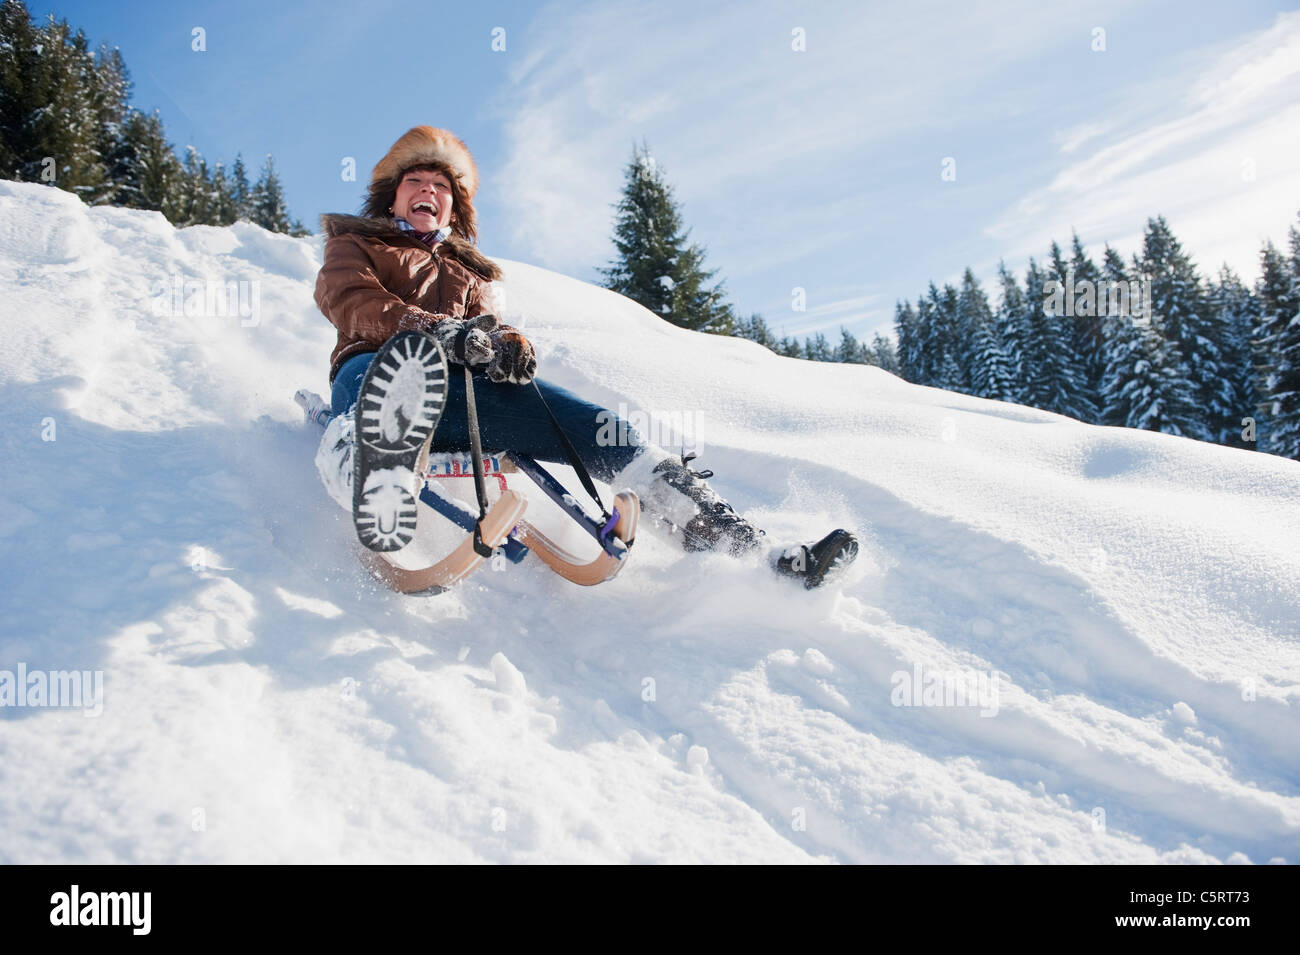 L'Autriche, Pays de Salzbourg, Flachau, jeune femme de la luge dans la neige Banque D'Images